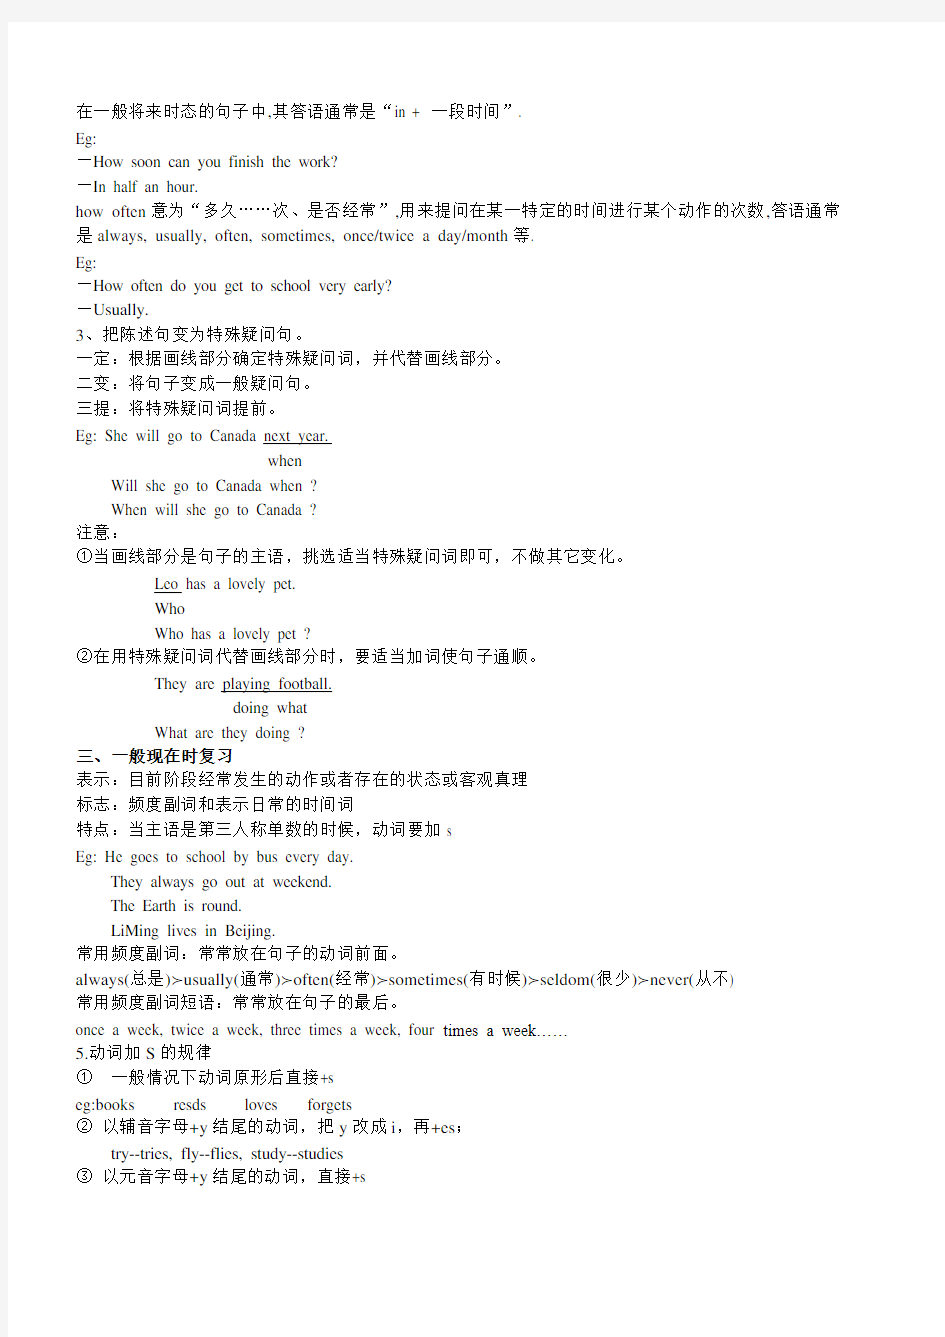 广州版英语七年级U1-U3语法复习以及习题